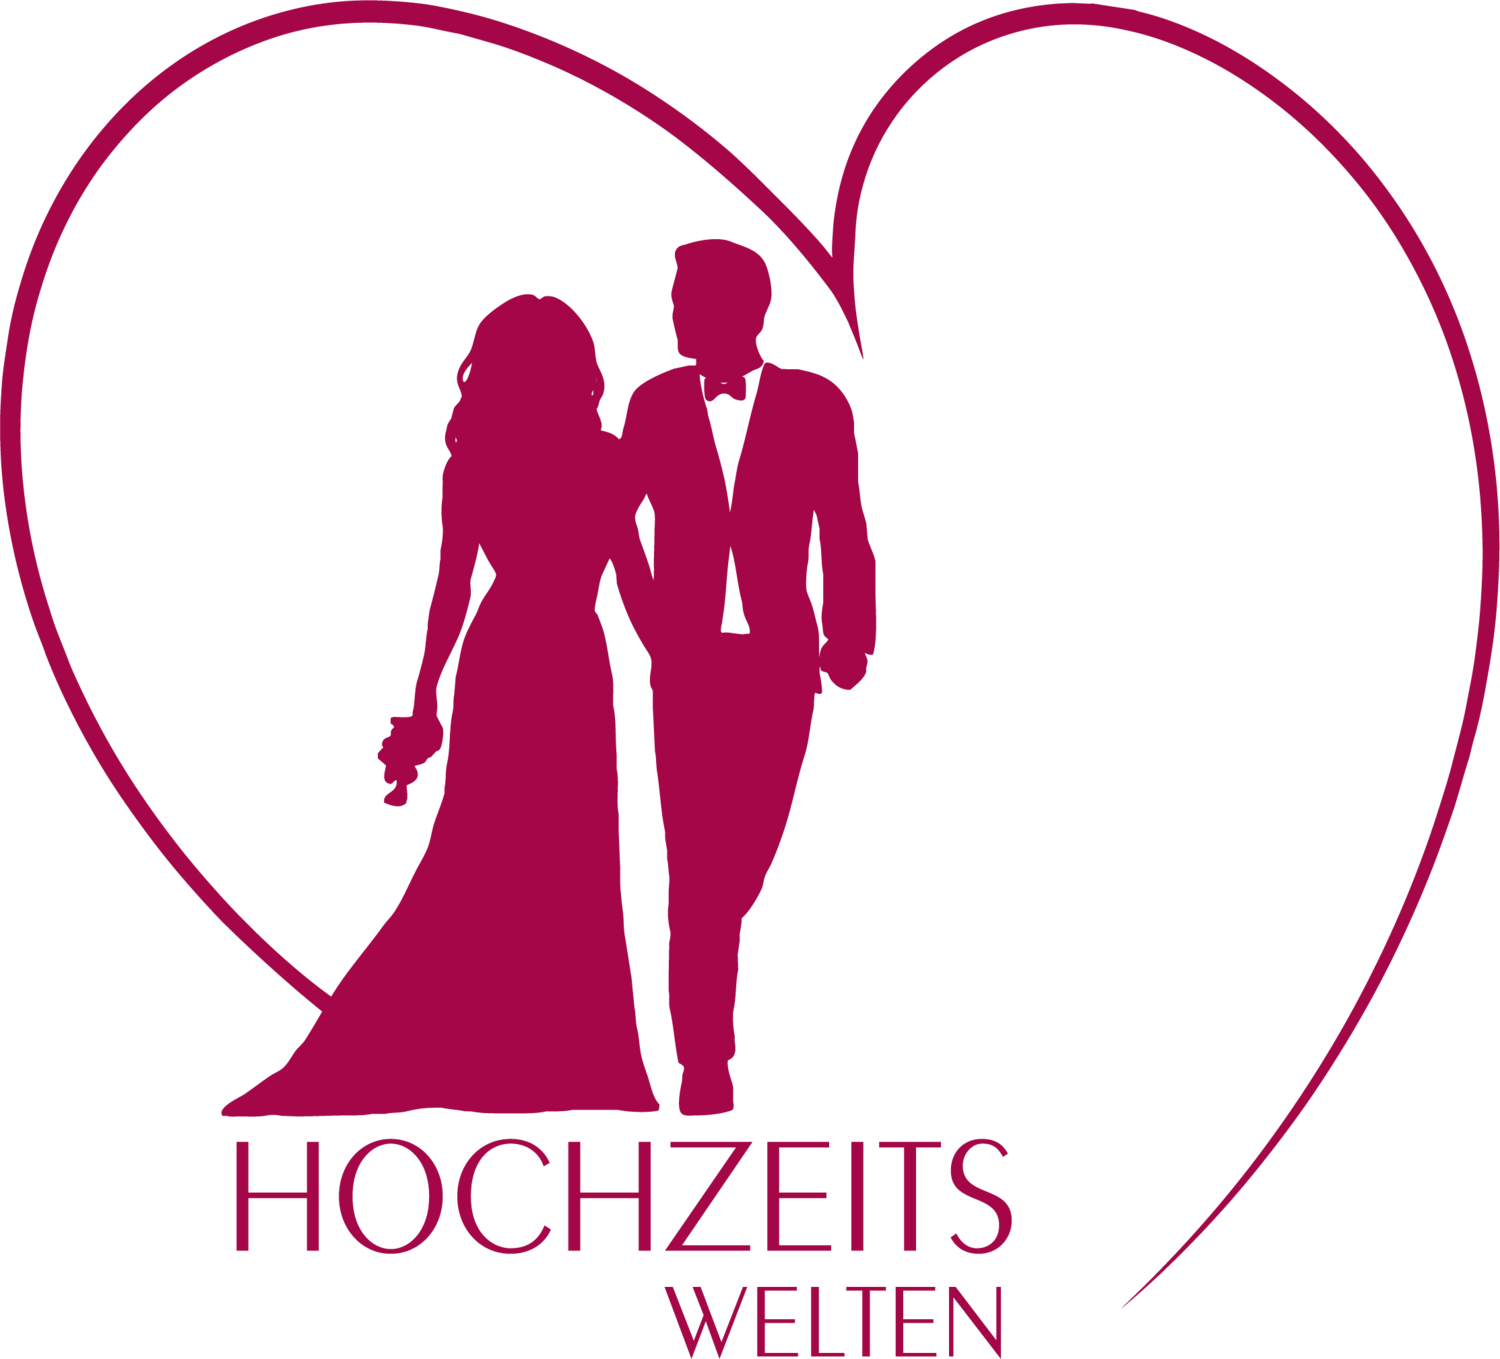 Hochzeitswelten Logo21